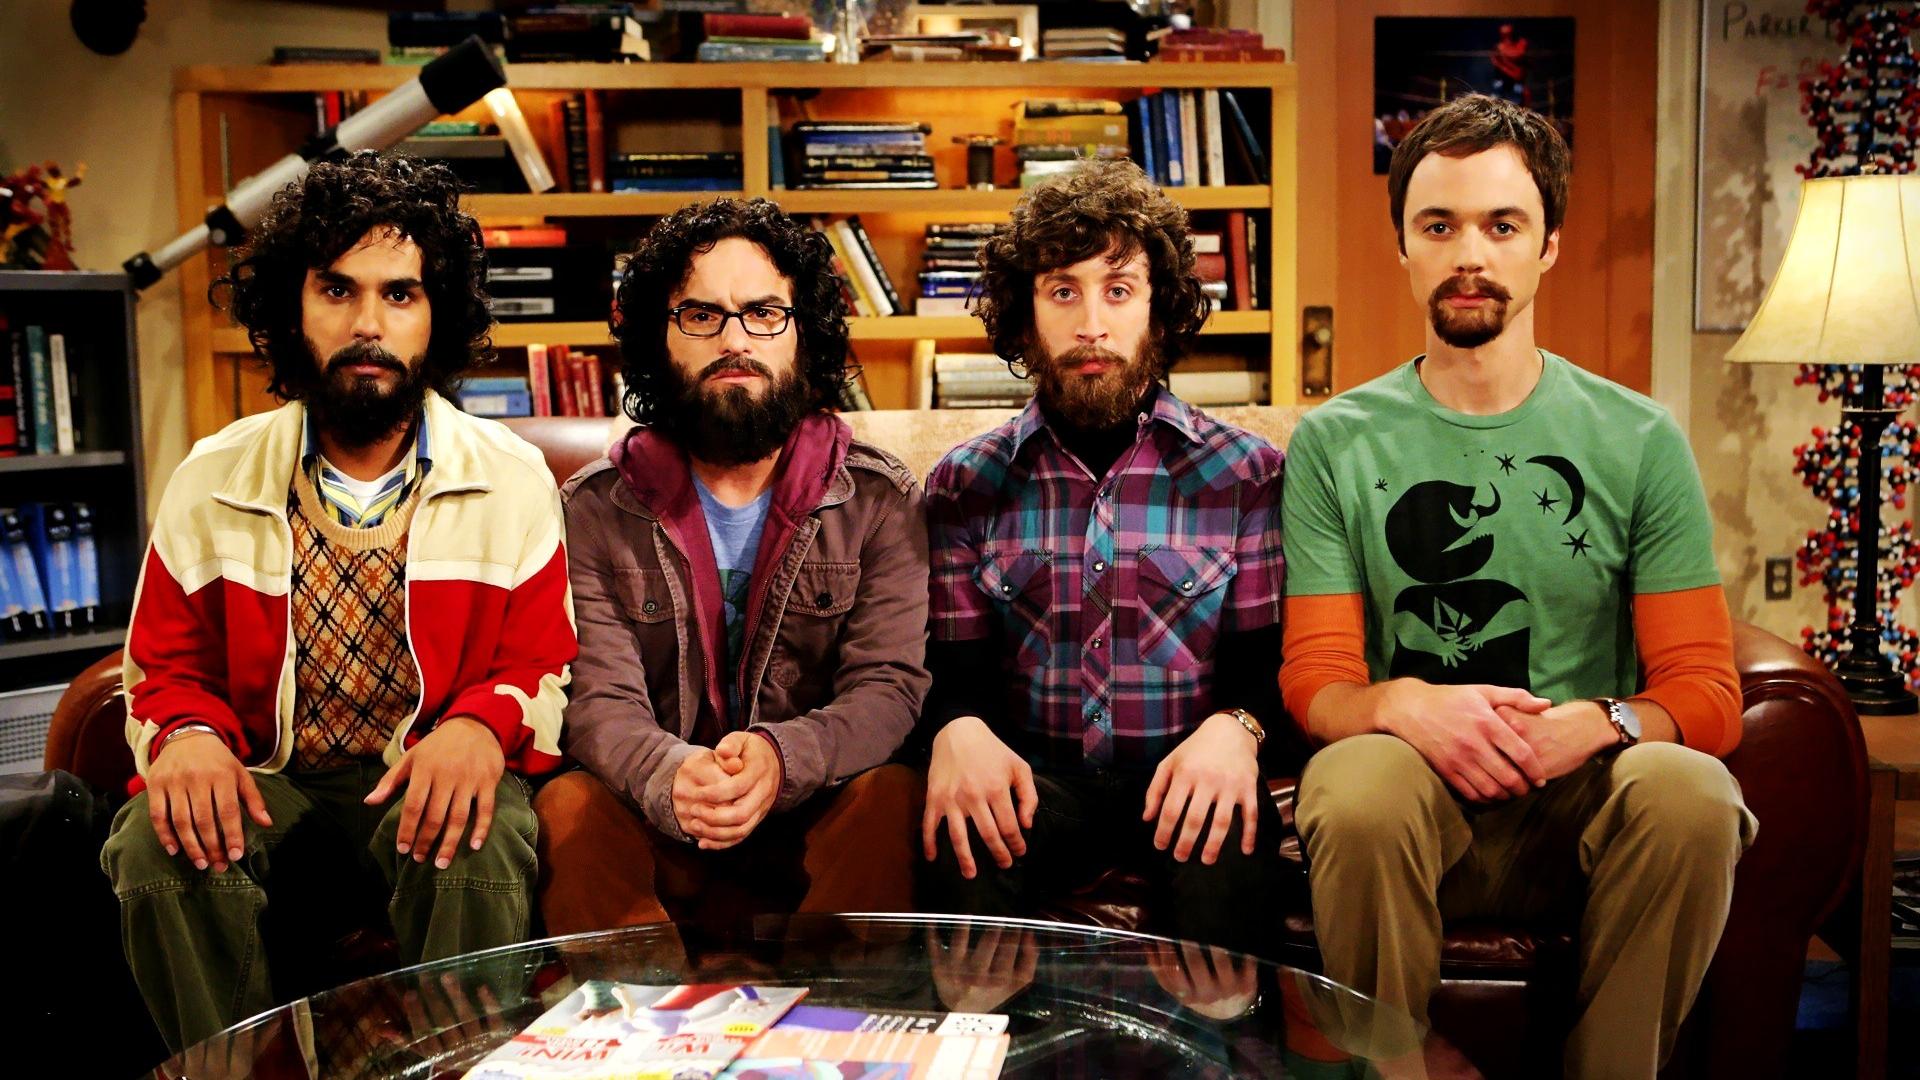 The Big Bang Theory Art